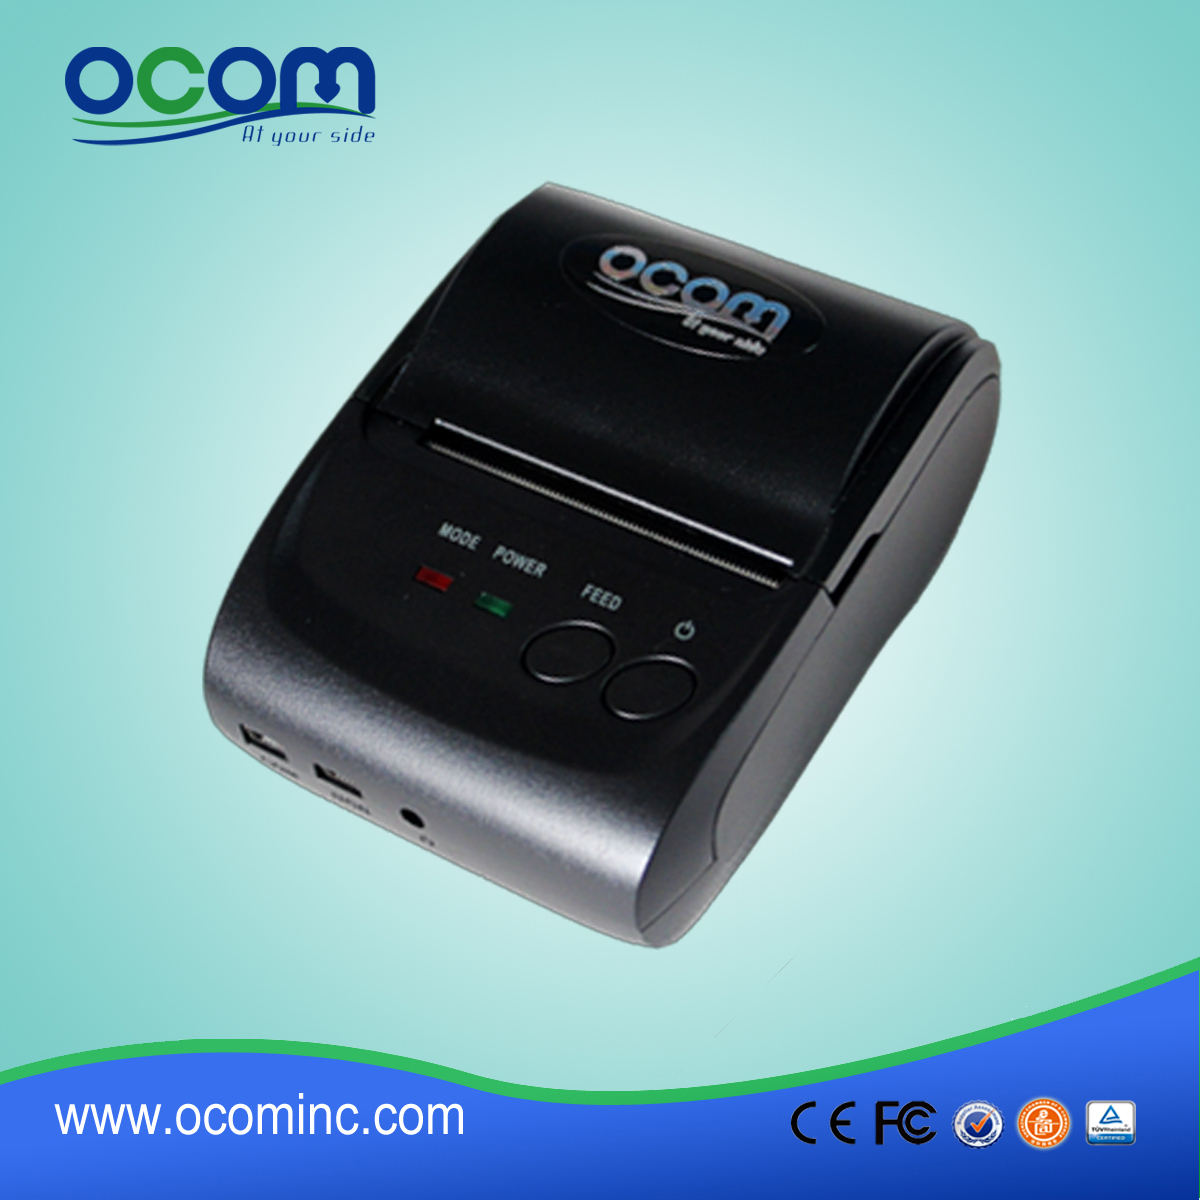 OCPP-M05: 58 мм портативный Bluetooth термопринтер с SDK